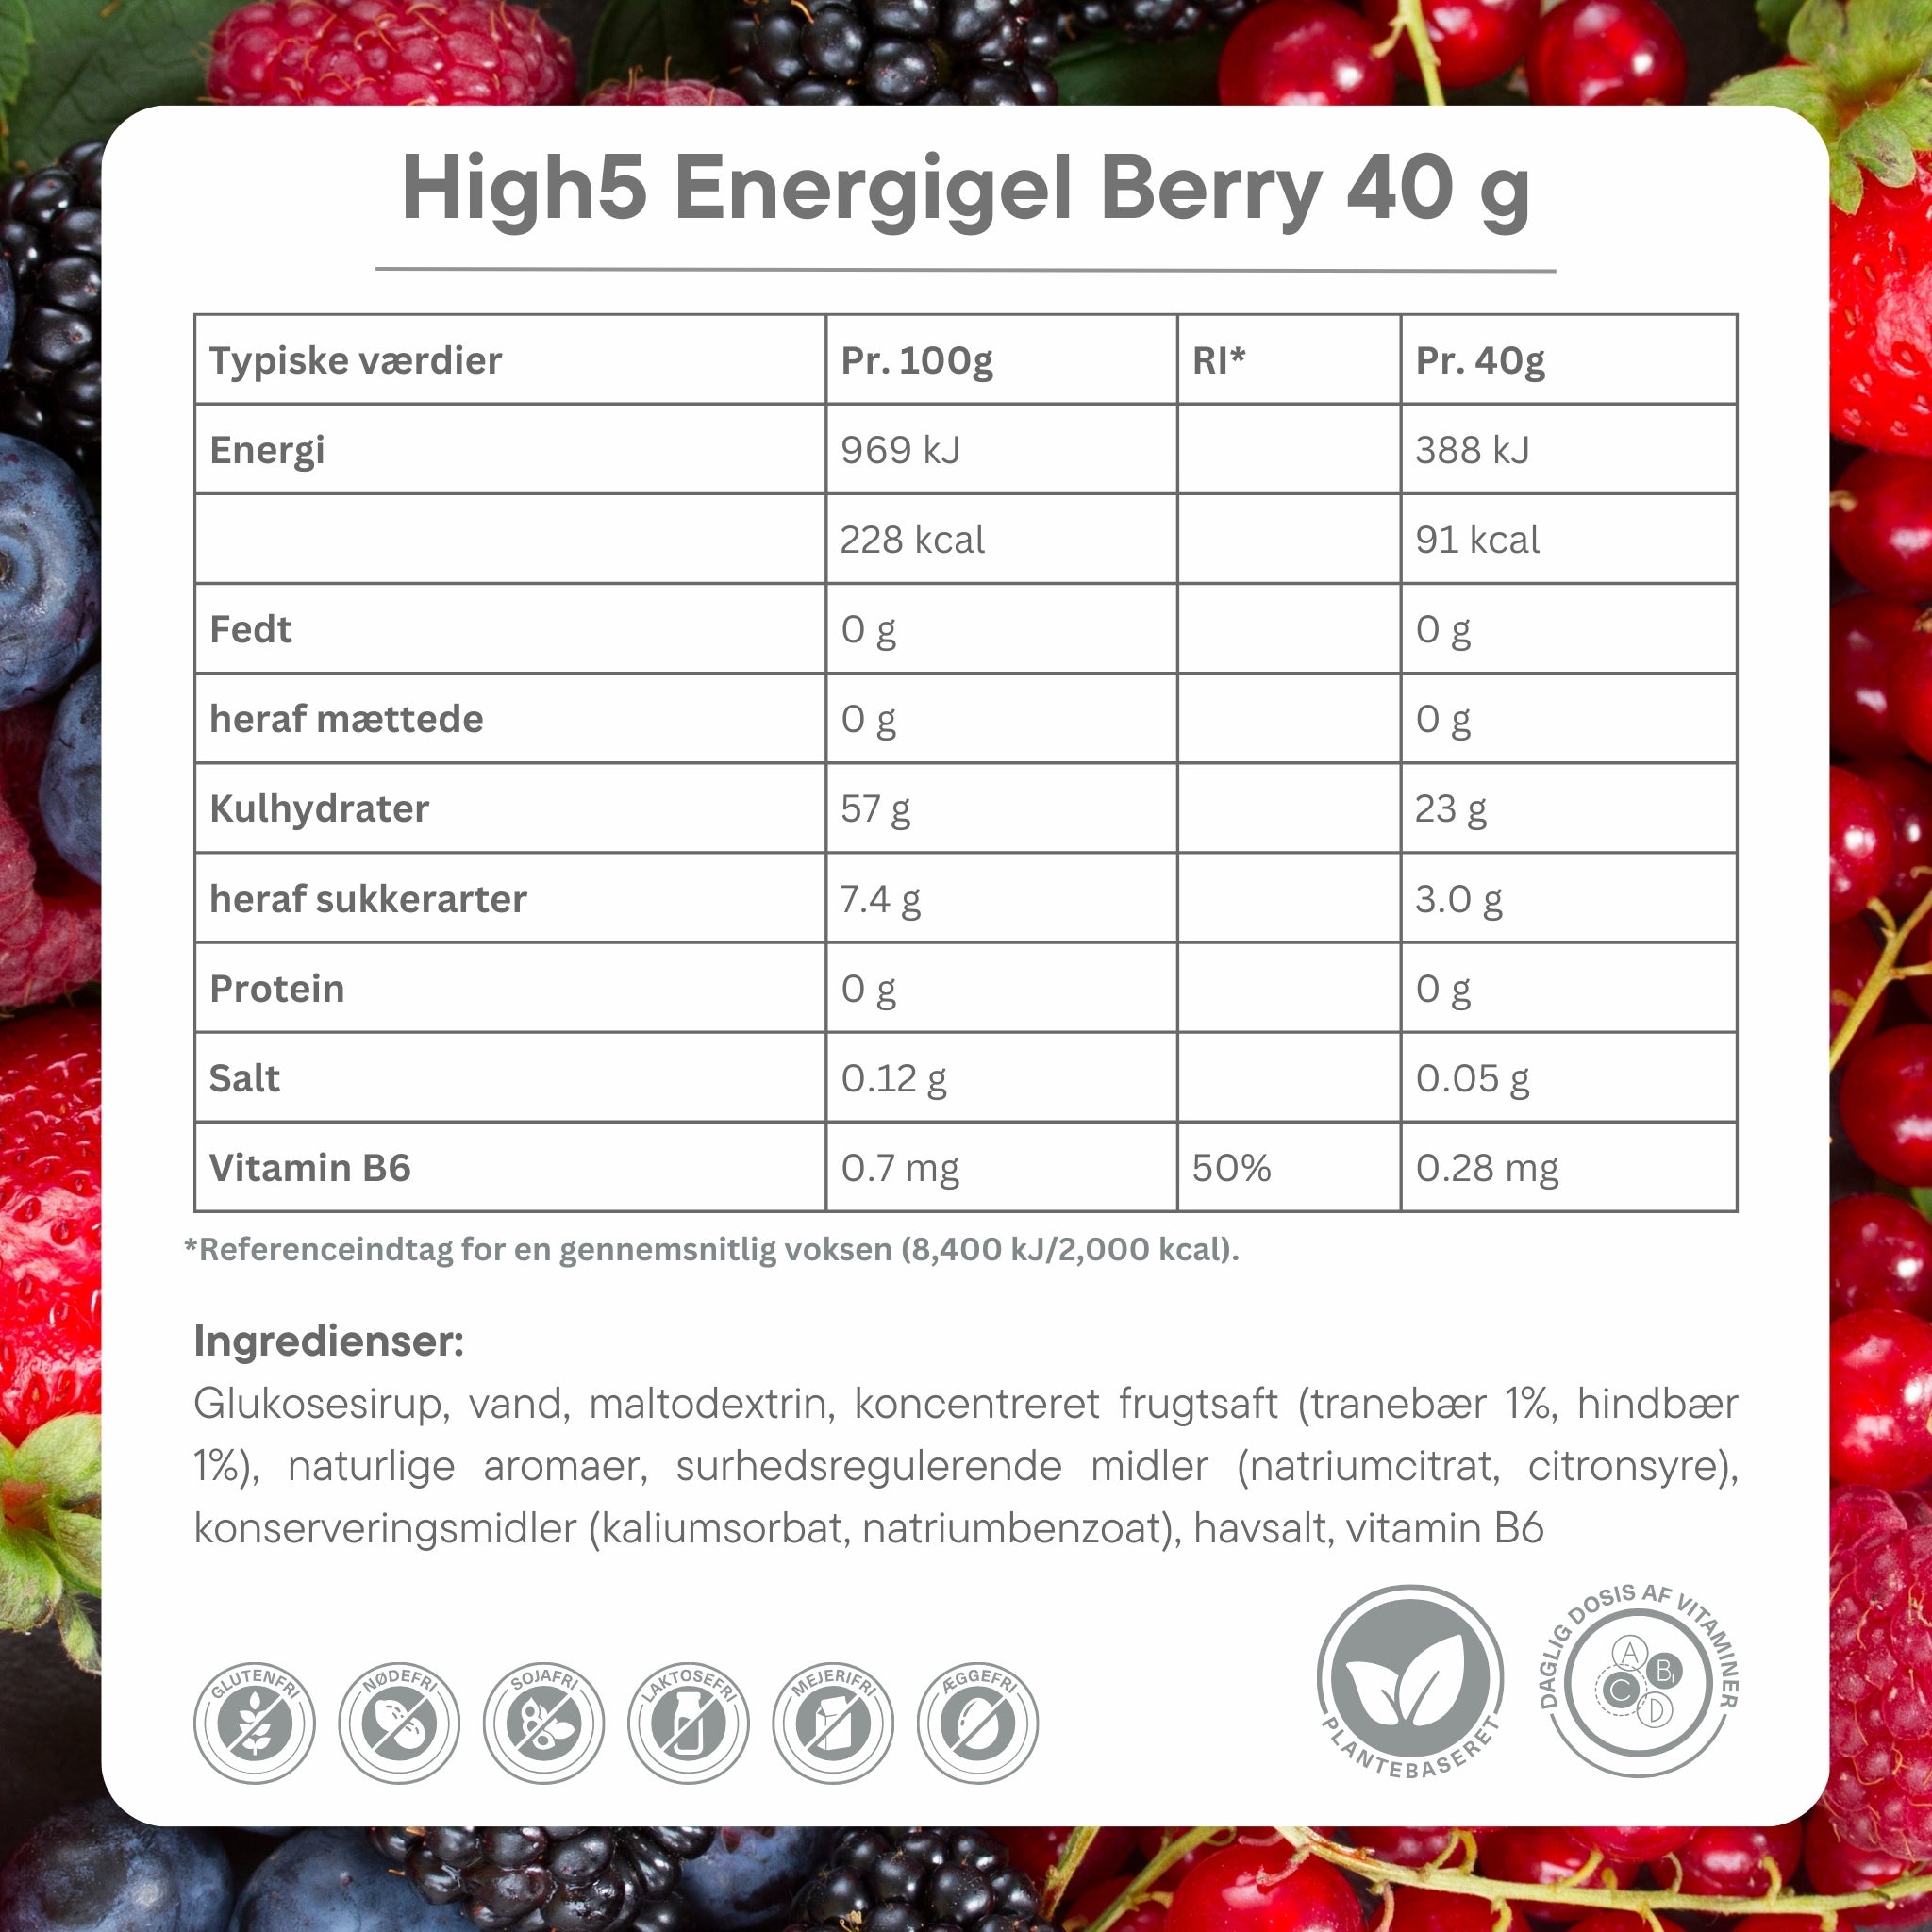 High 5 Energy Gel Berry 40 g pack - Ingredients dk